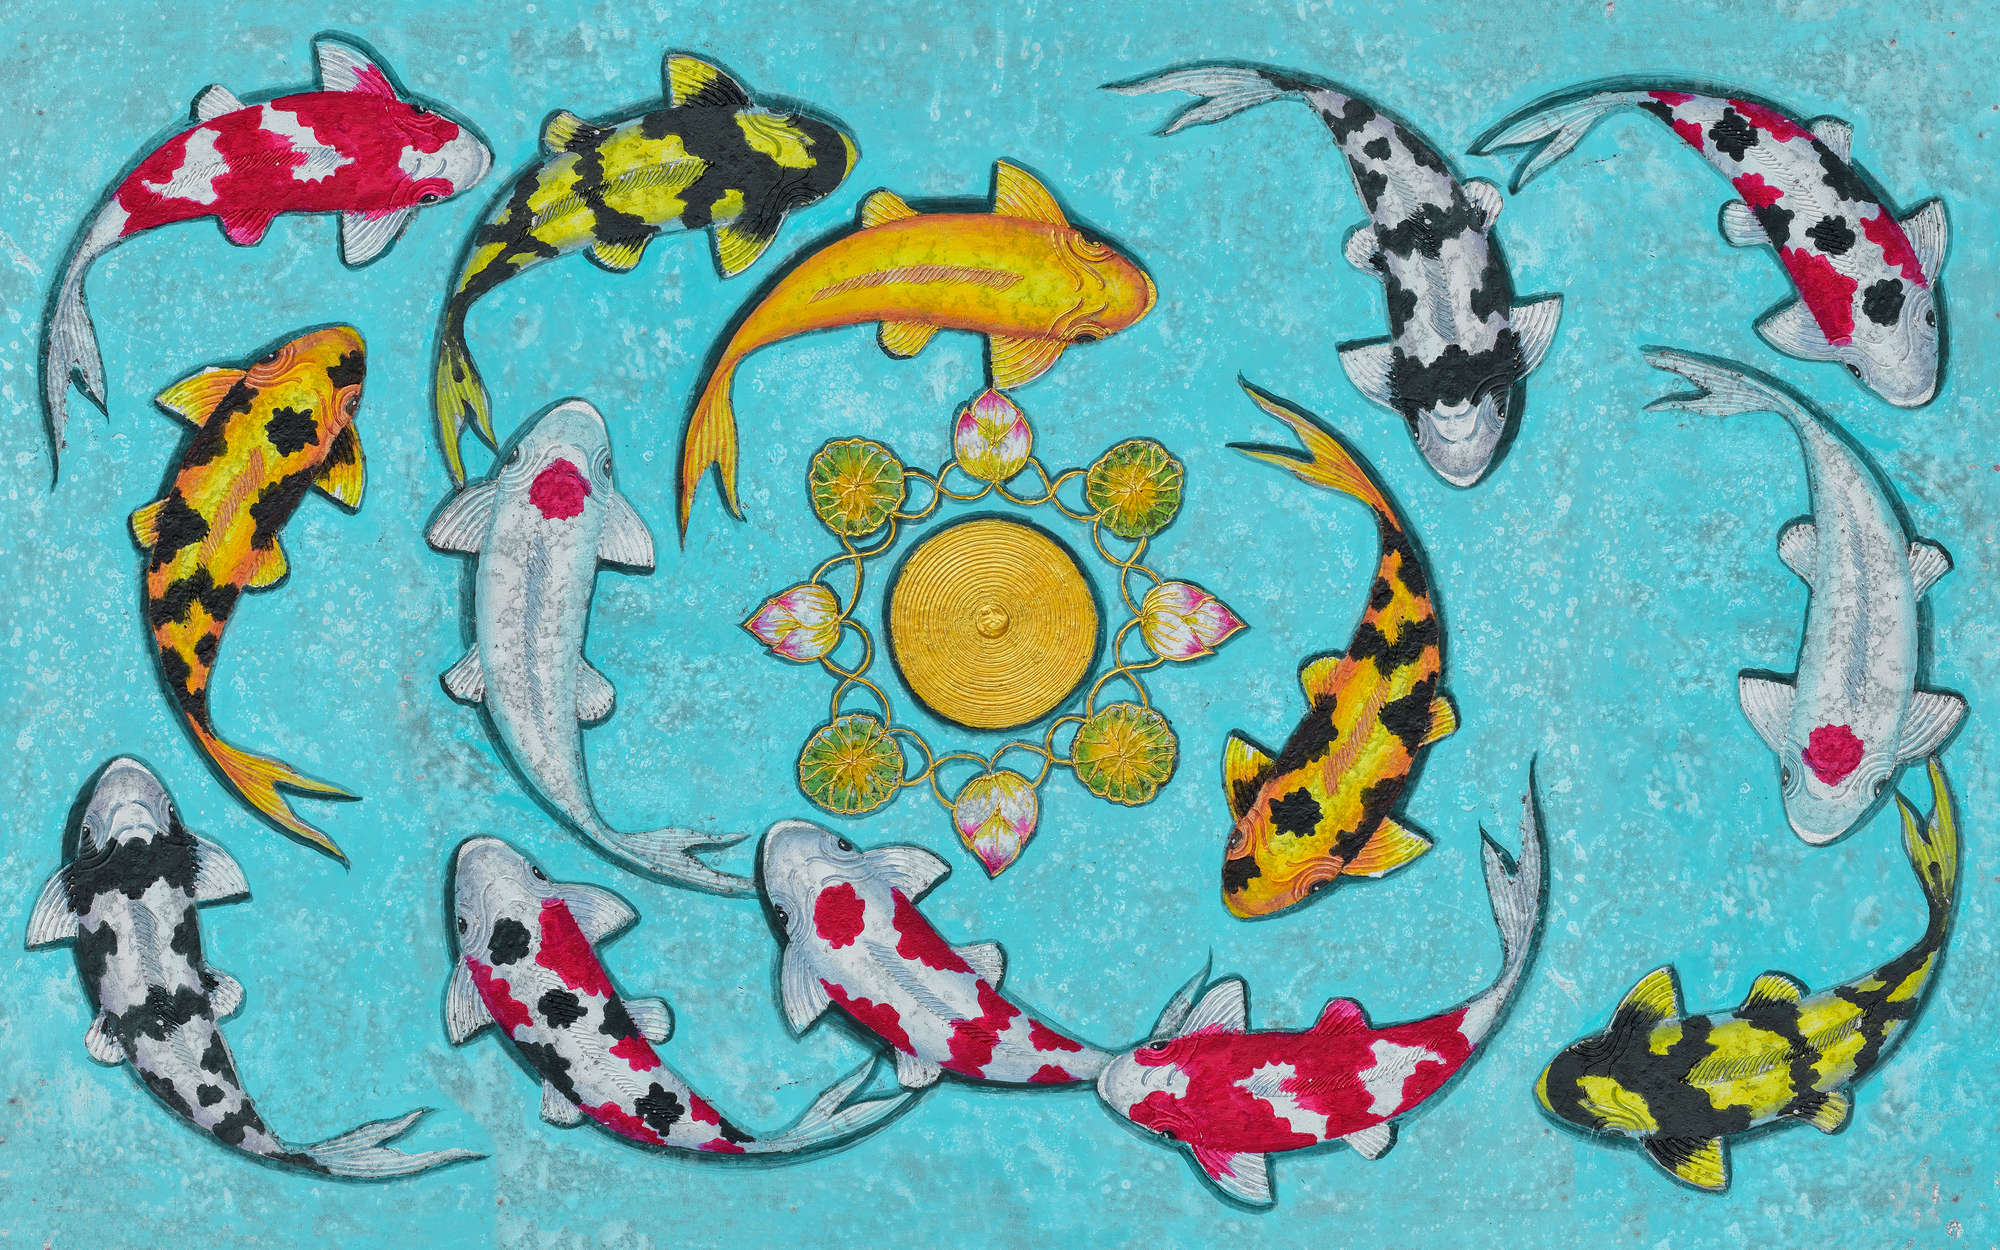             papiers peints à impression numérique œuvre d'art avec des poissons - intissé structuré
        